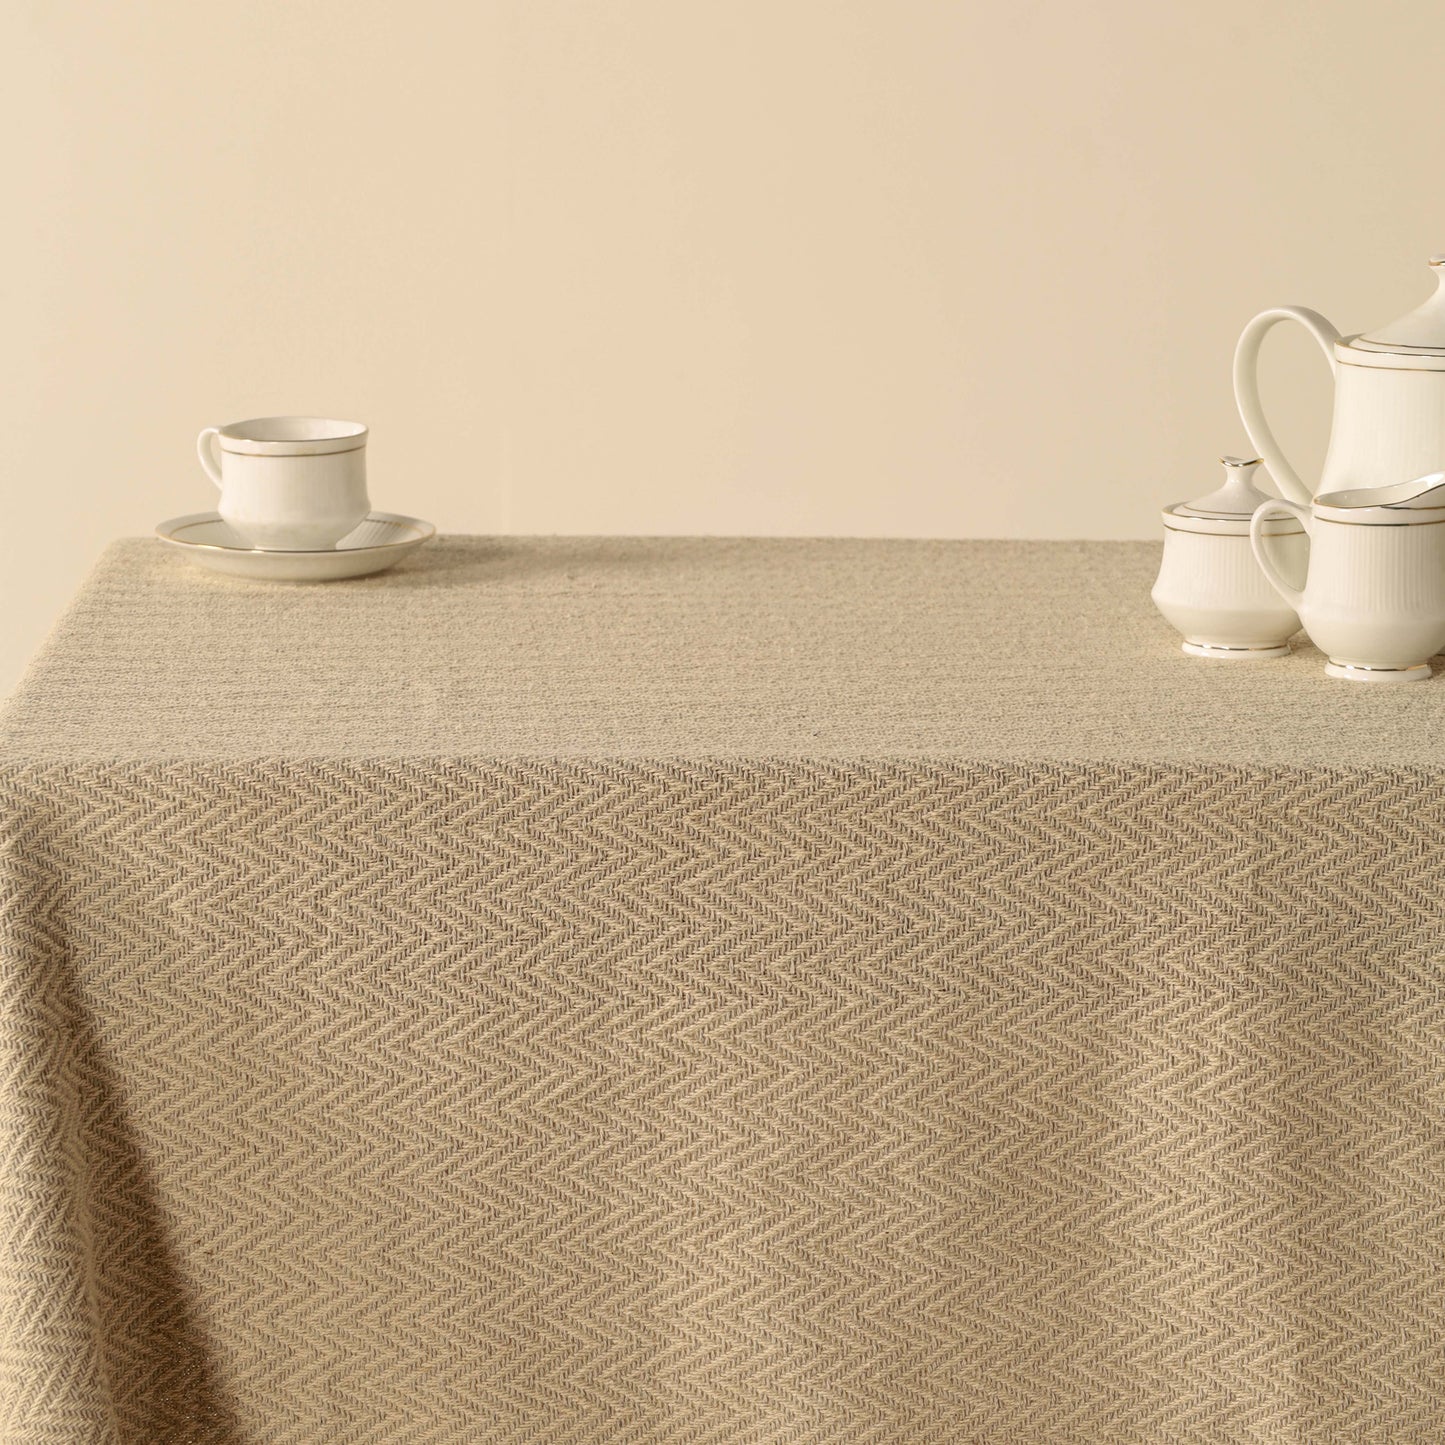 Gray Cotton Tablecloth